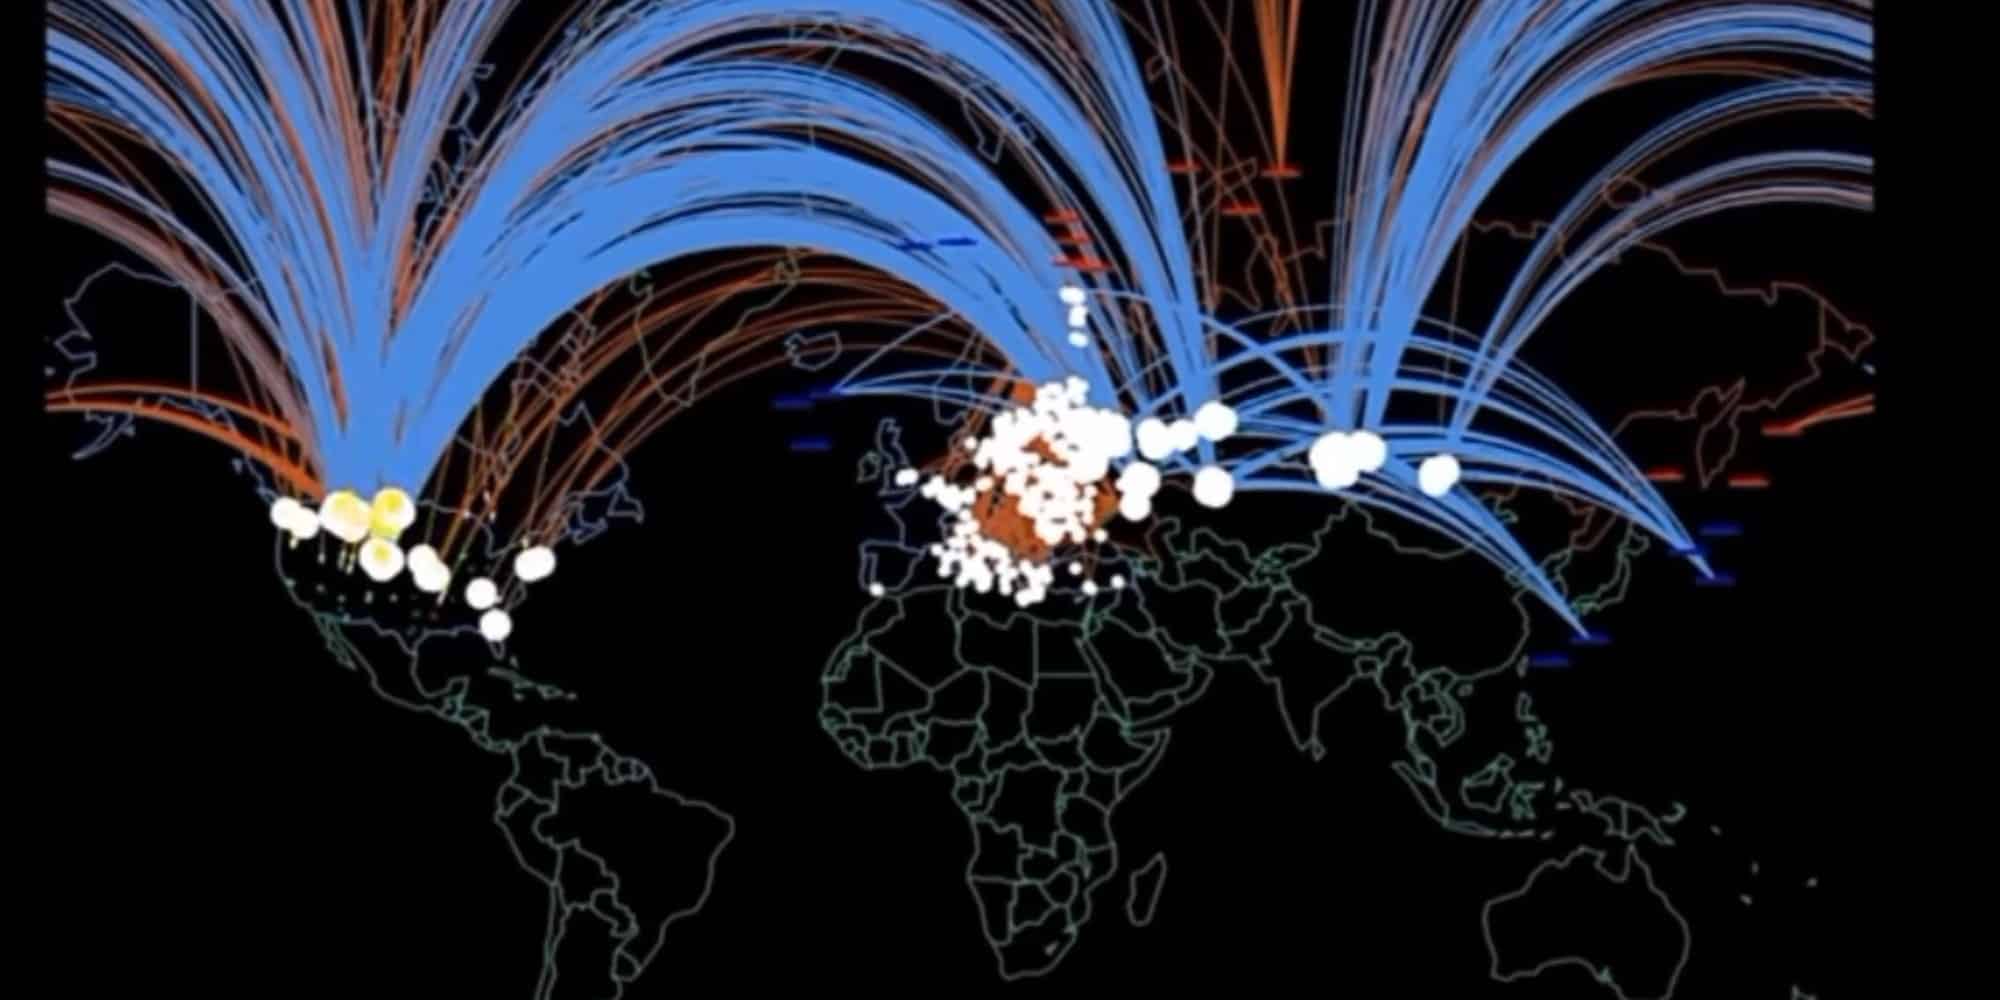 Η προσομοίωση αν ξεκινήσει πυρηνικός πόλεμος - Ο χάρτης της Γης